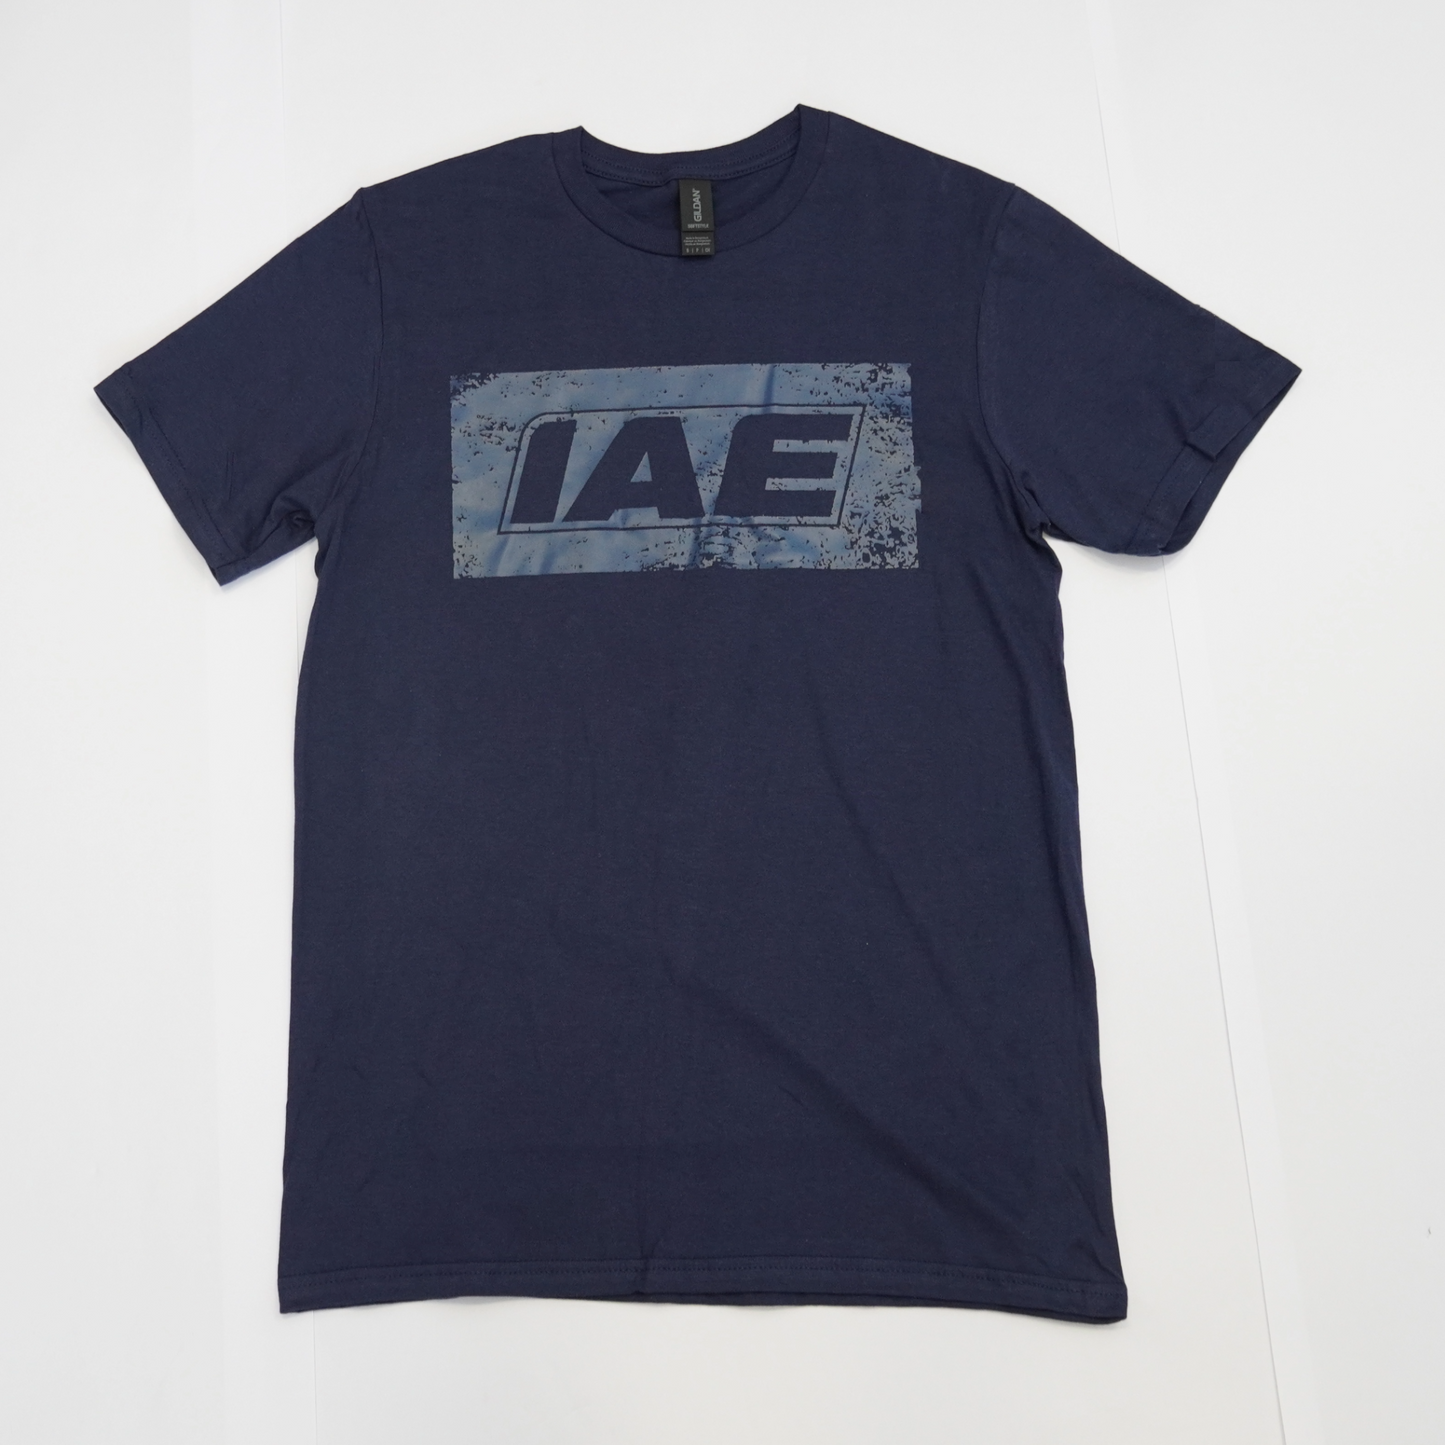 IAE Unisex Short Sleeve T-Shirt